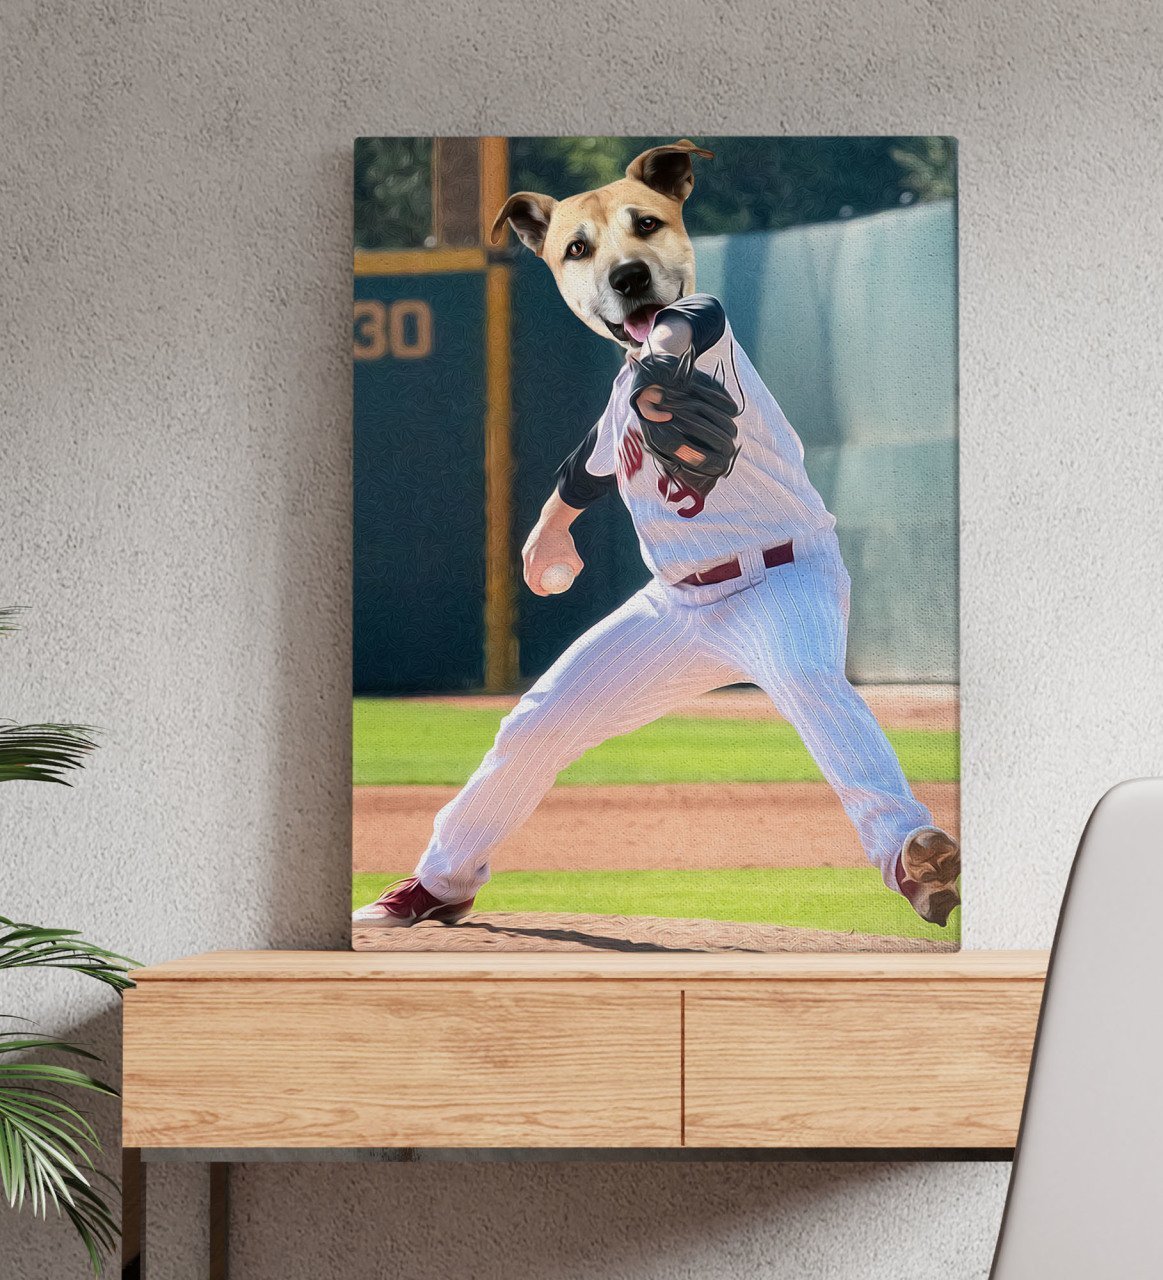 Evcil Dostlara Özel Beyzbol Oyuncusu Tasarımlı Portre Kanvas Tablo 50x70cm-5